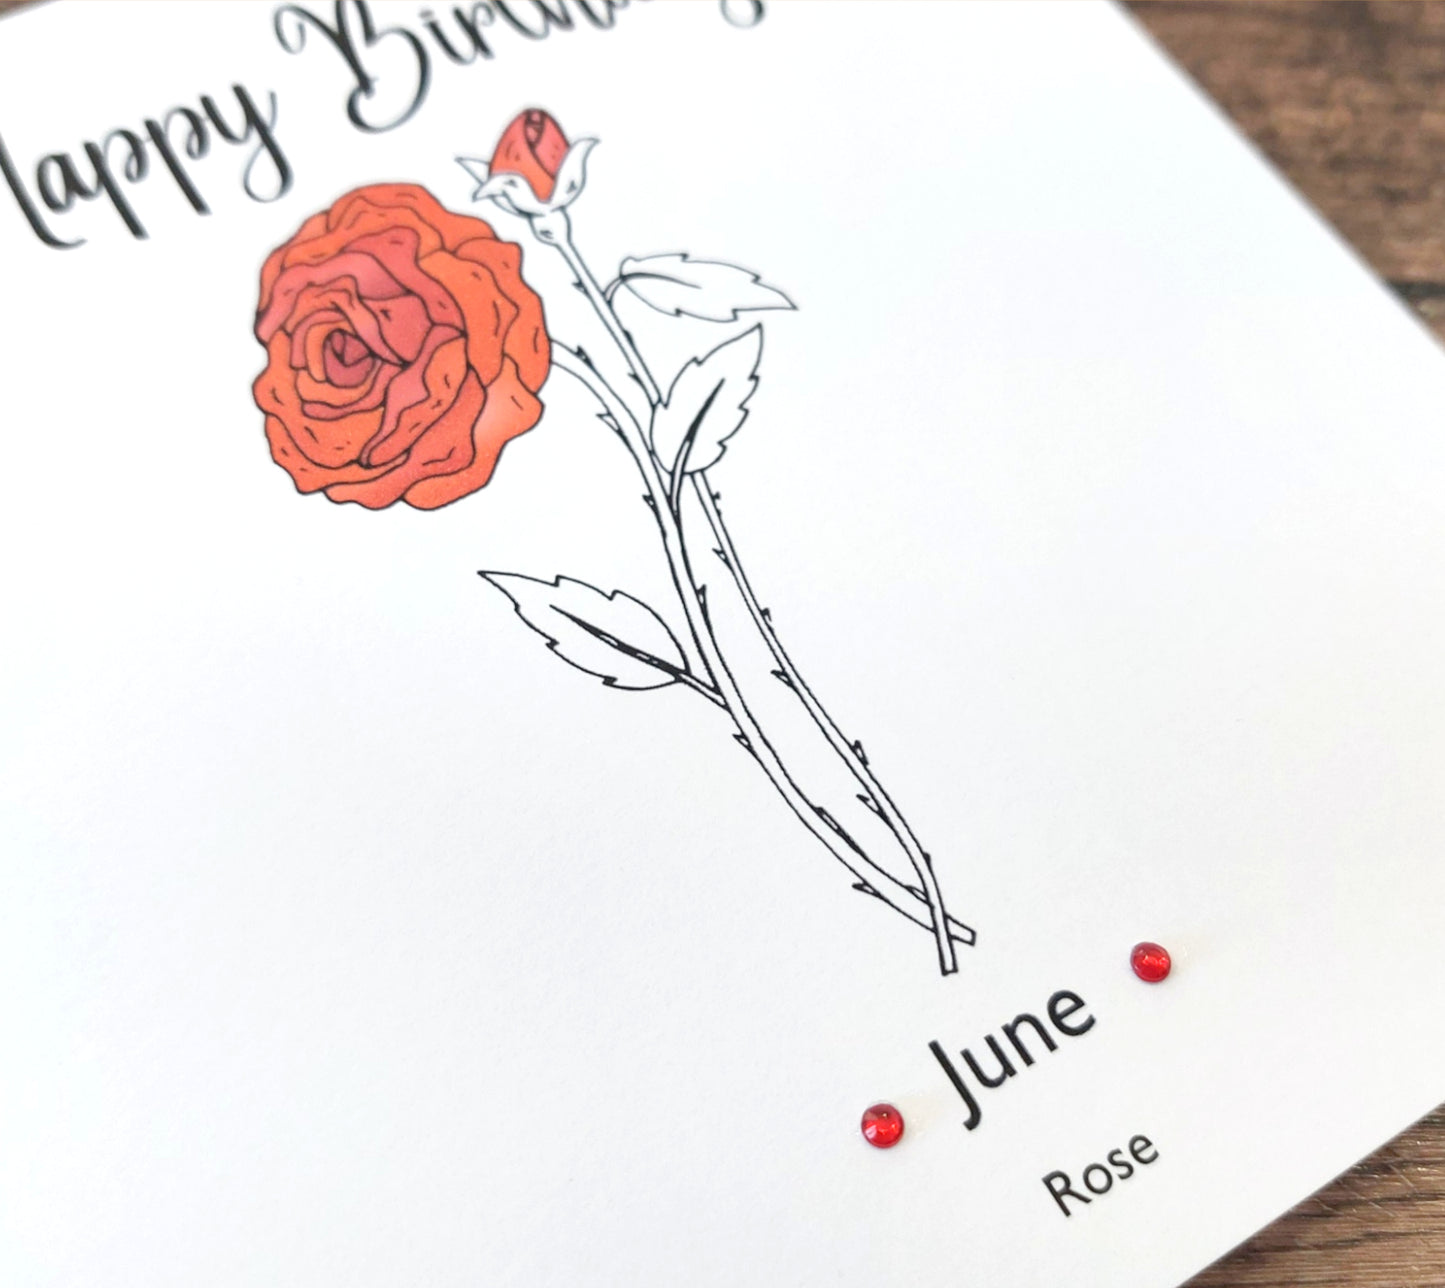 June - Rose - Birthday Flower Card